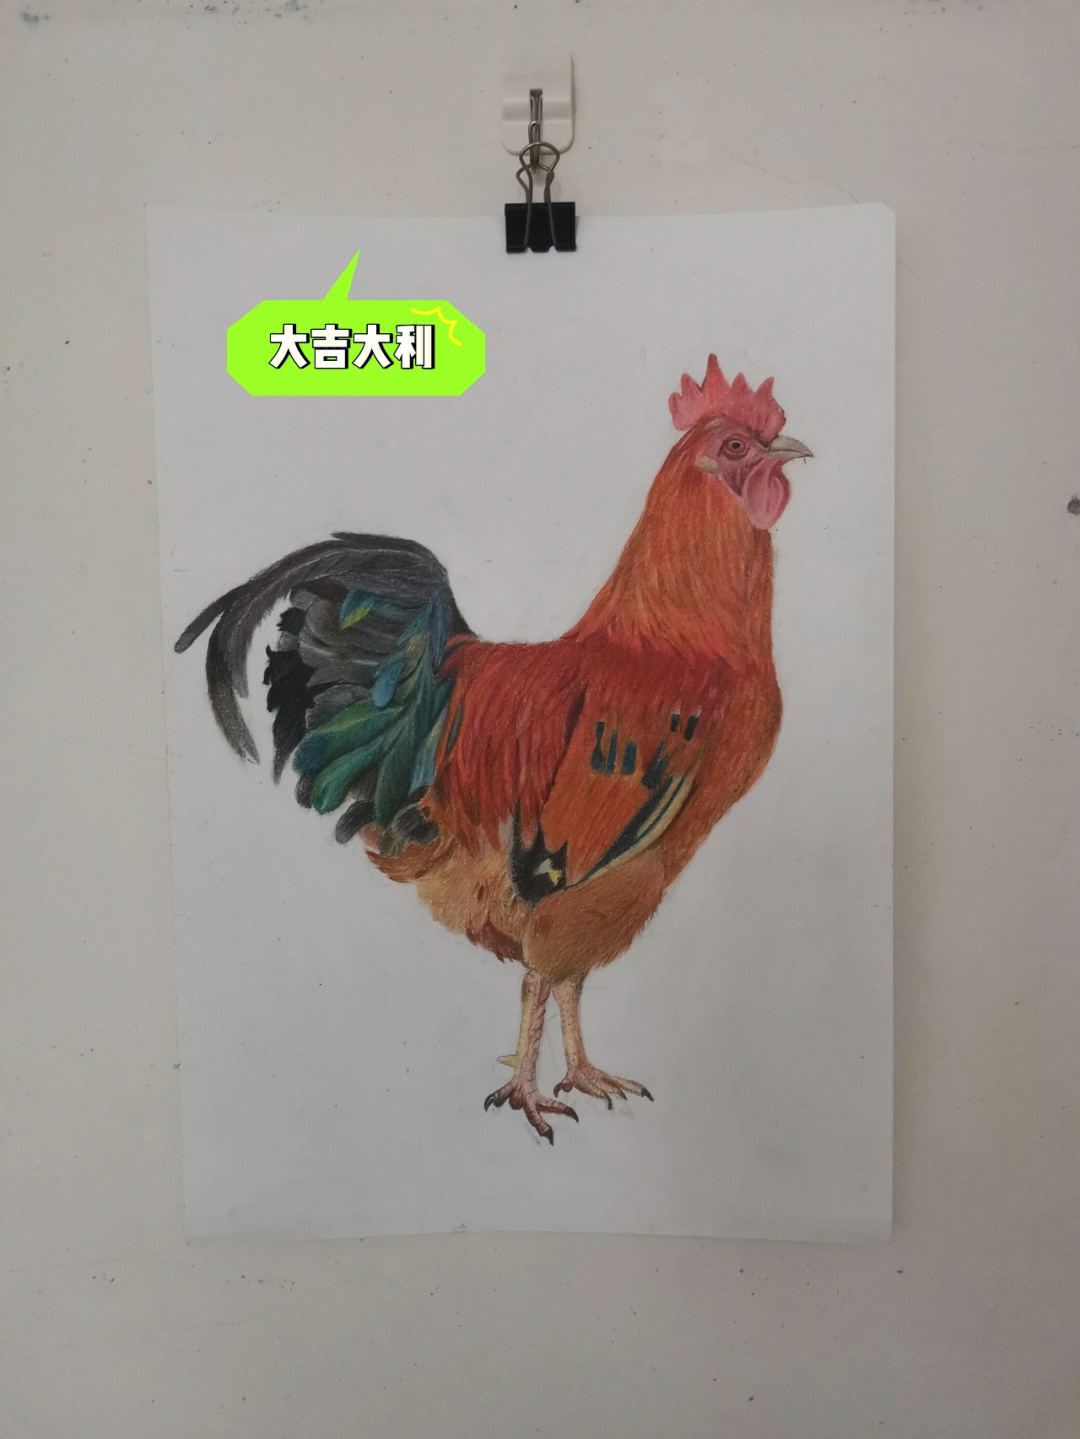 彩铅画的大公鸡完成了